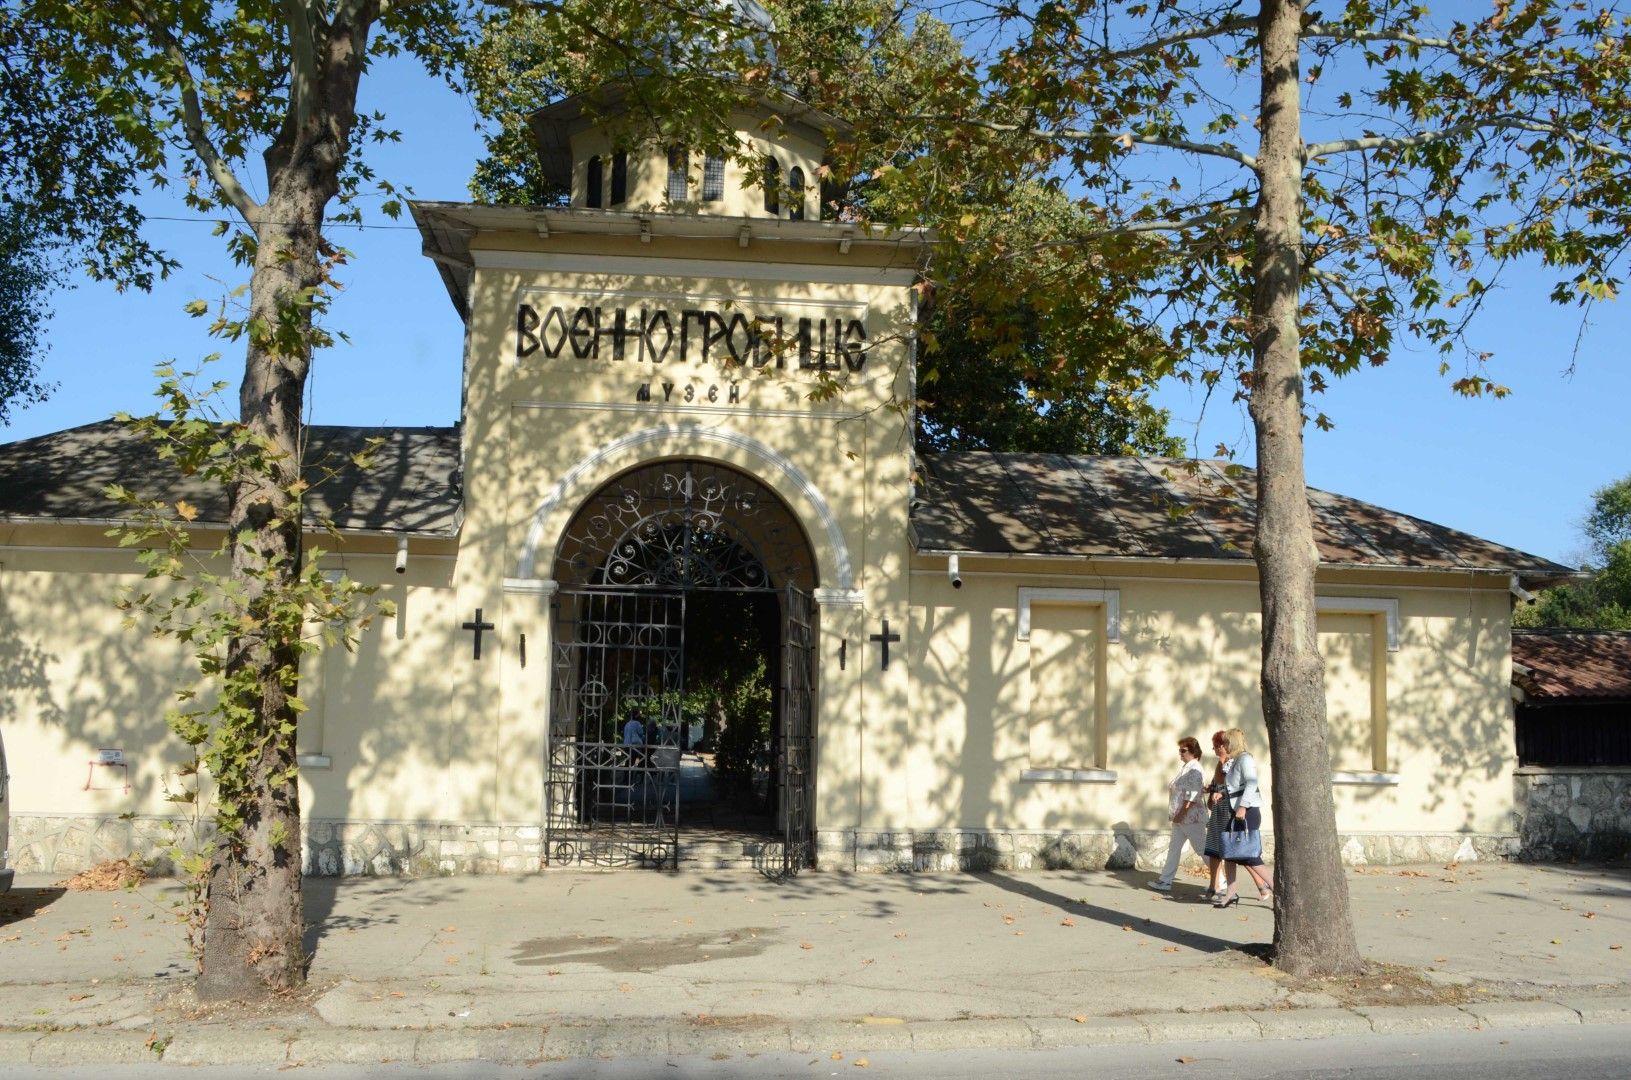 Във военното гробище-музей в Добрич - най-голямото в страната от времето на Първата световна война, в което са погребани близо 3500 бойци от шест национални армии, бе обявен Ден на отворените врати